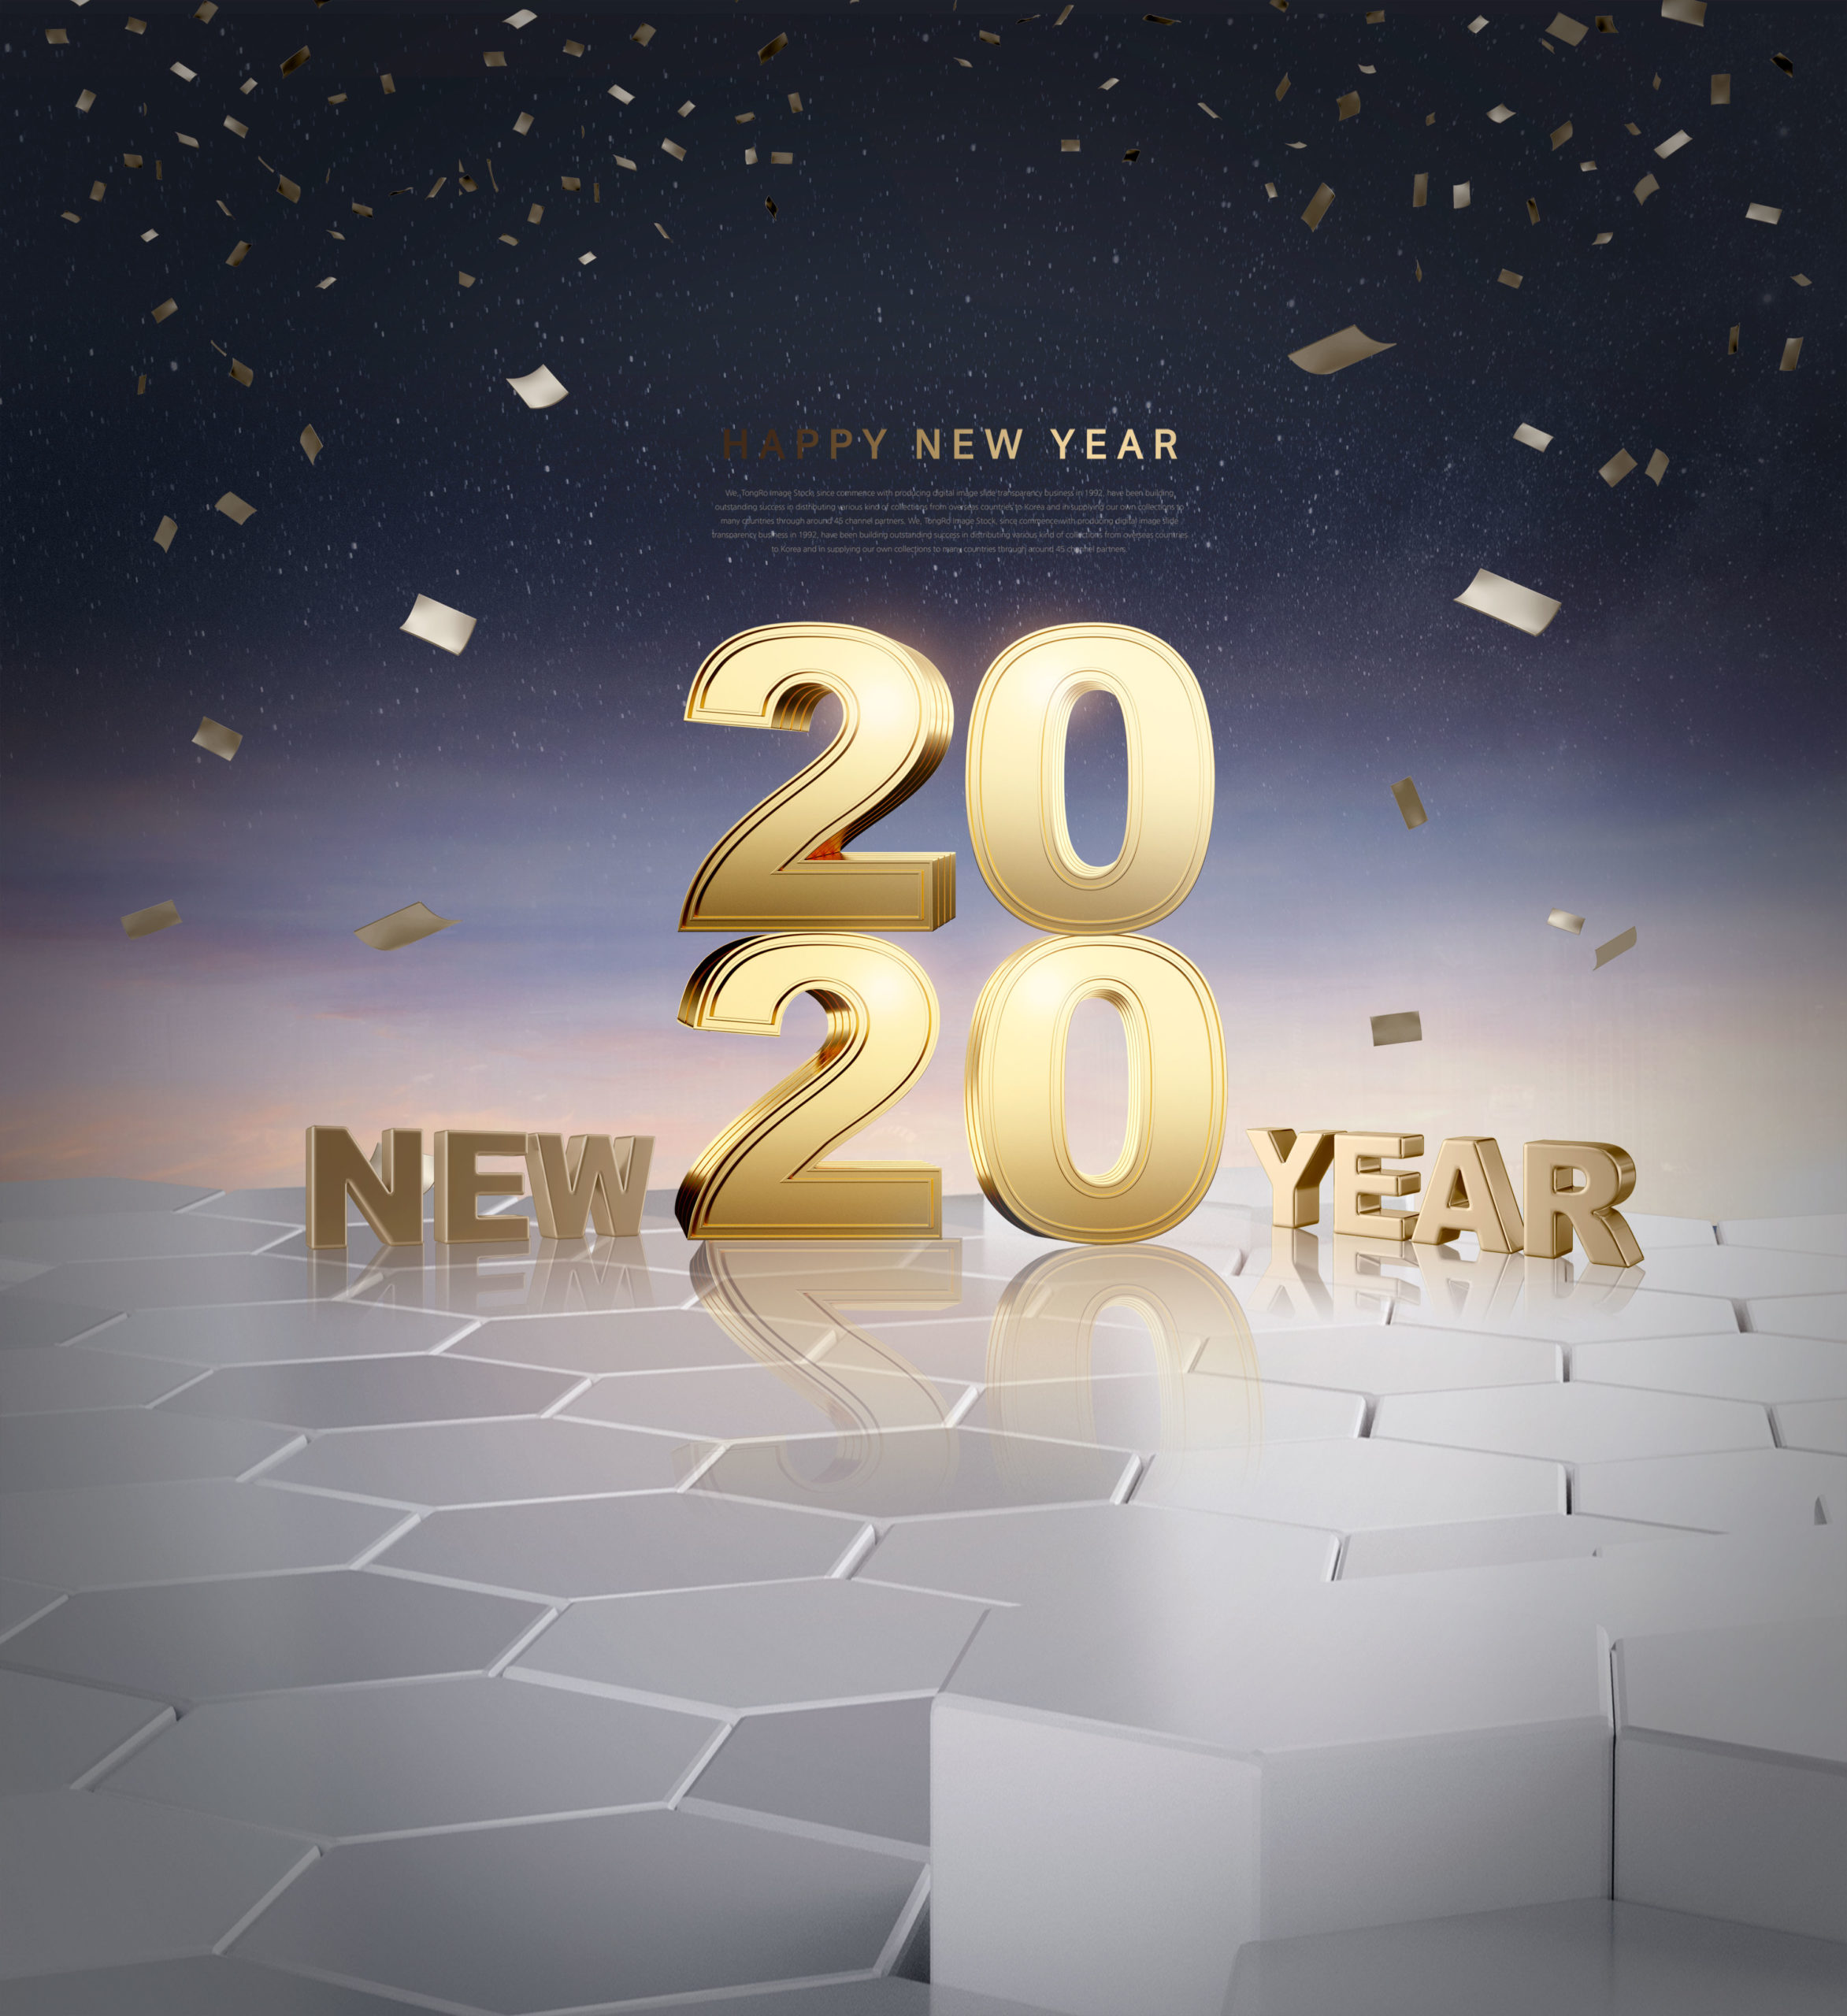 豪华金色2020新年快乐字体海报/贺卡/传单设计素材合集插图(1)